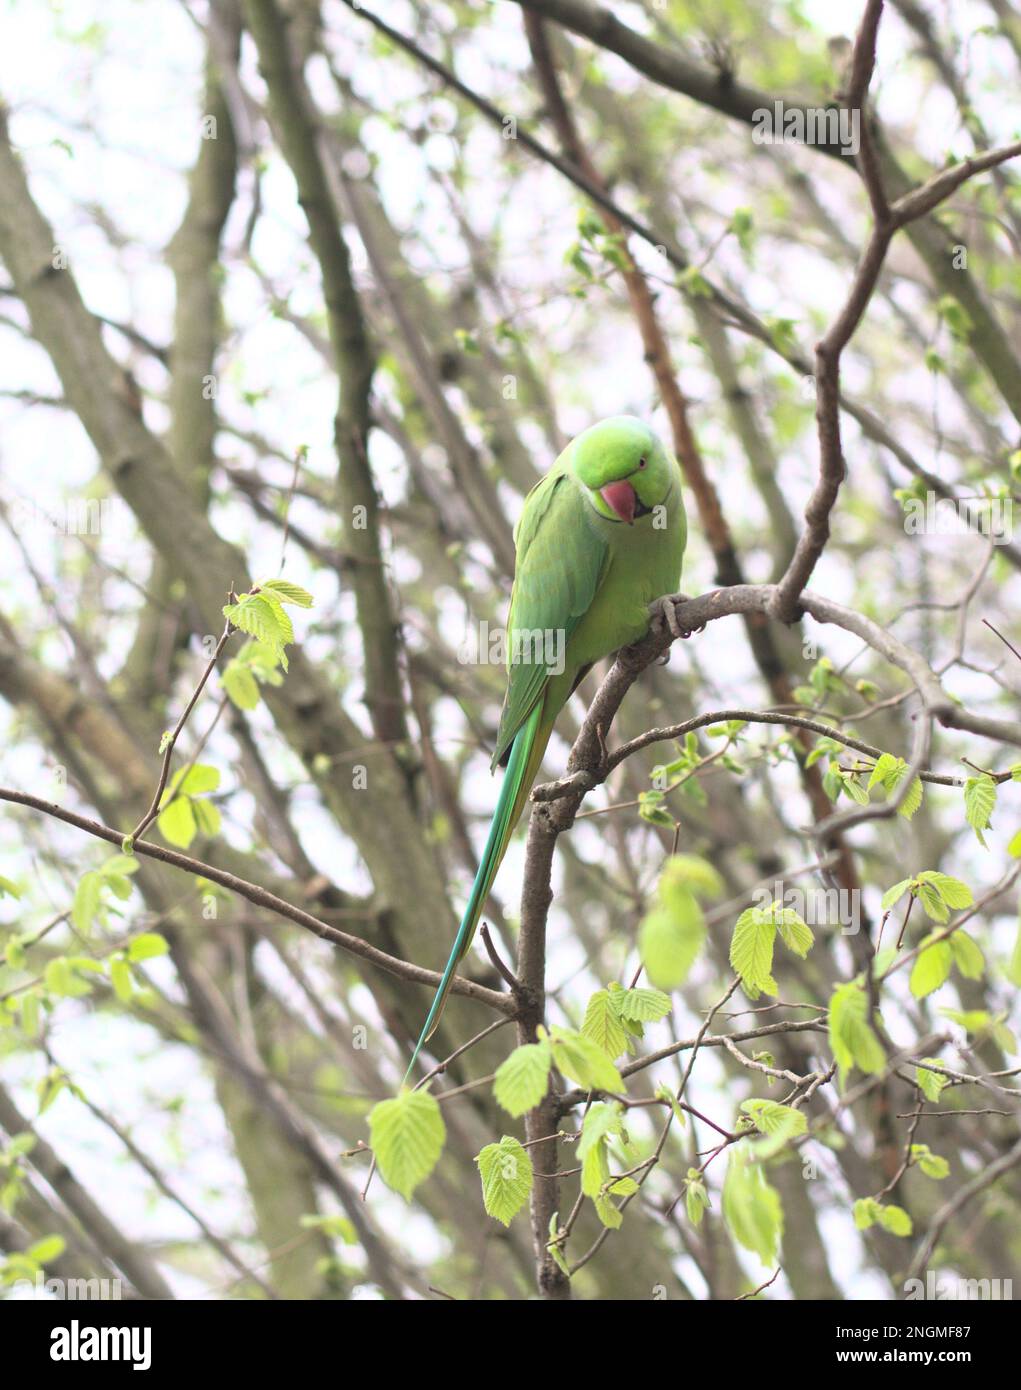 Un pappagallo verde siede arroccato su un ramo dell'albero mentre munching sul fogliame Foto Stock